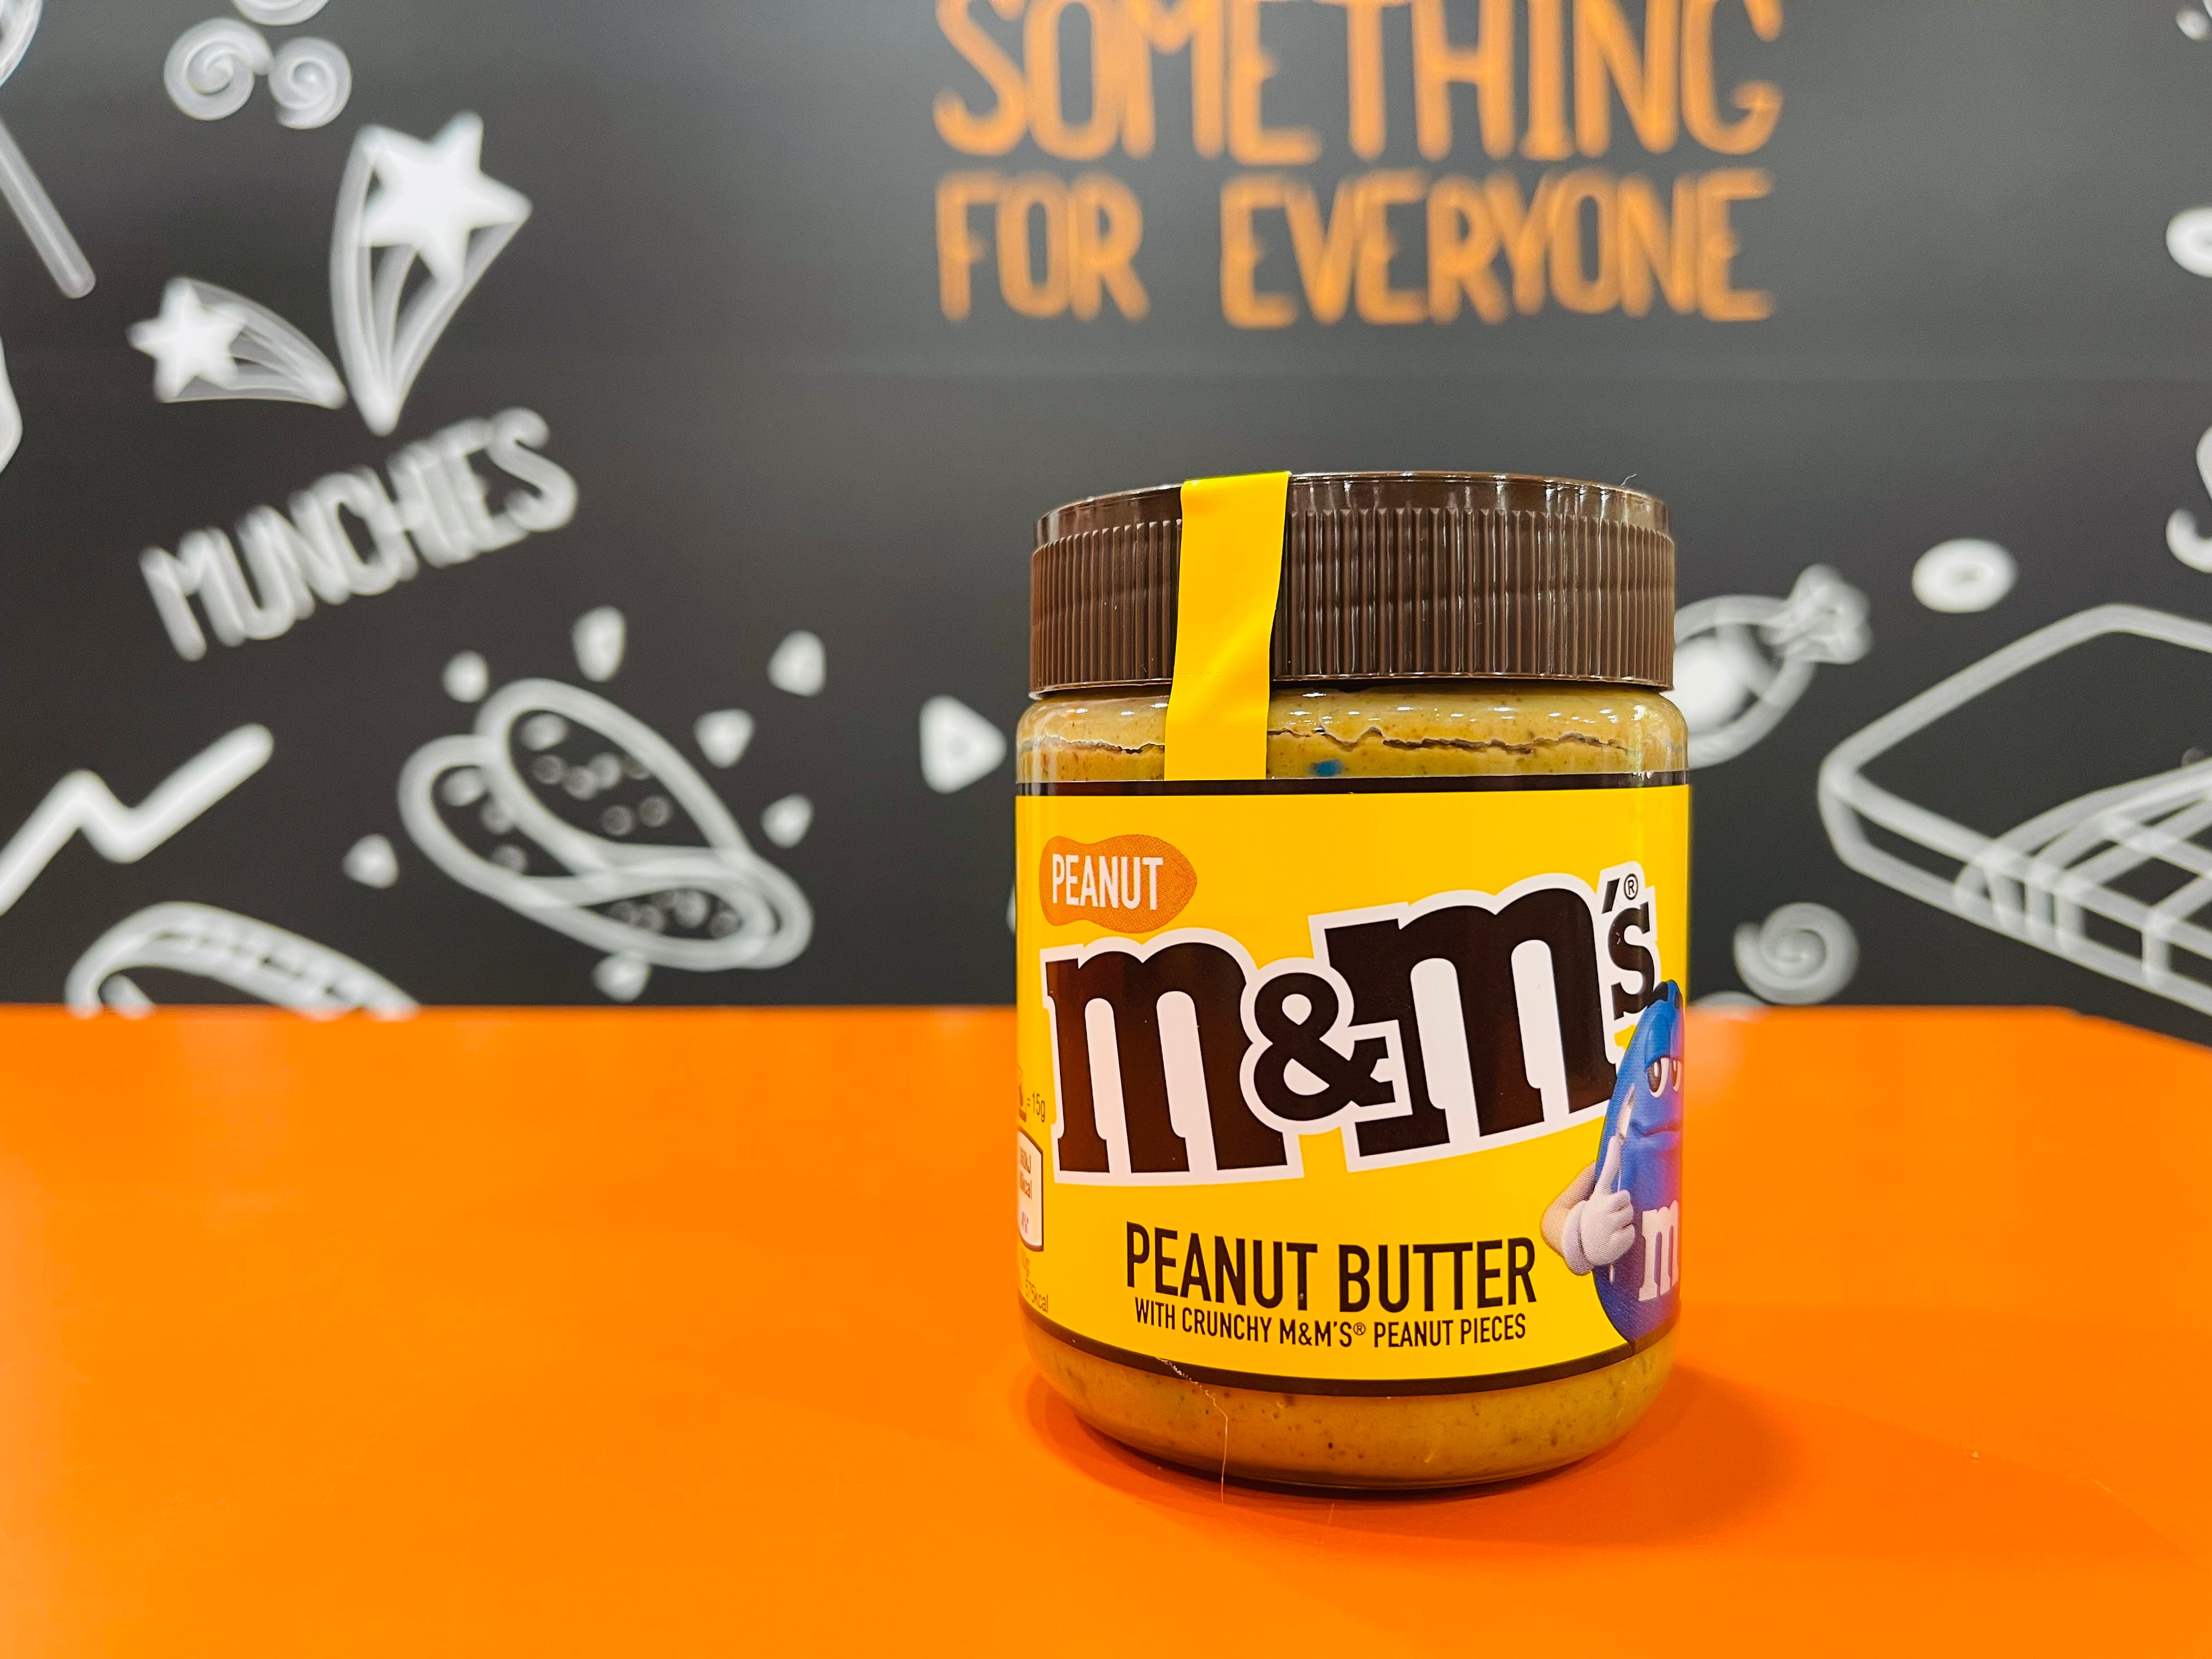 Peanut M&M’s Peanut Butter